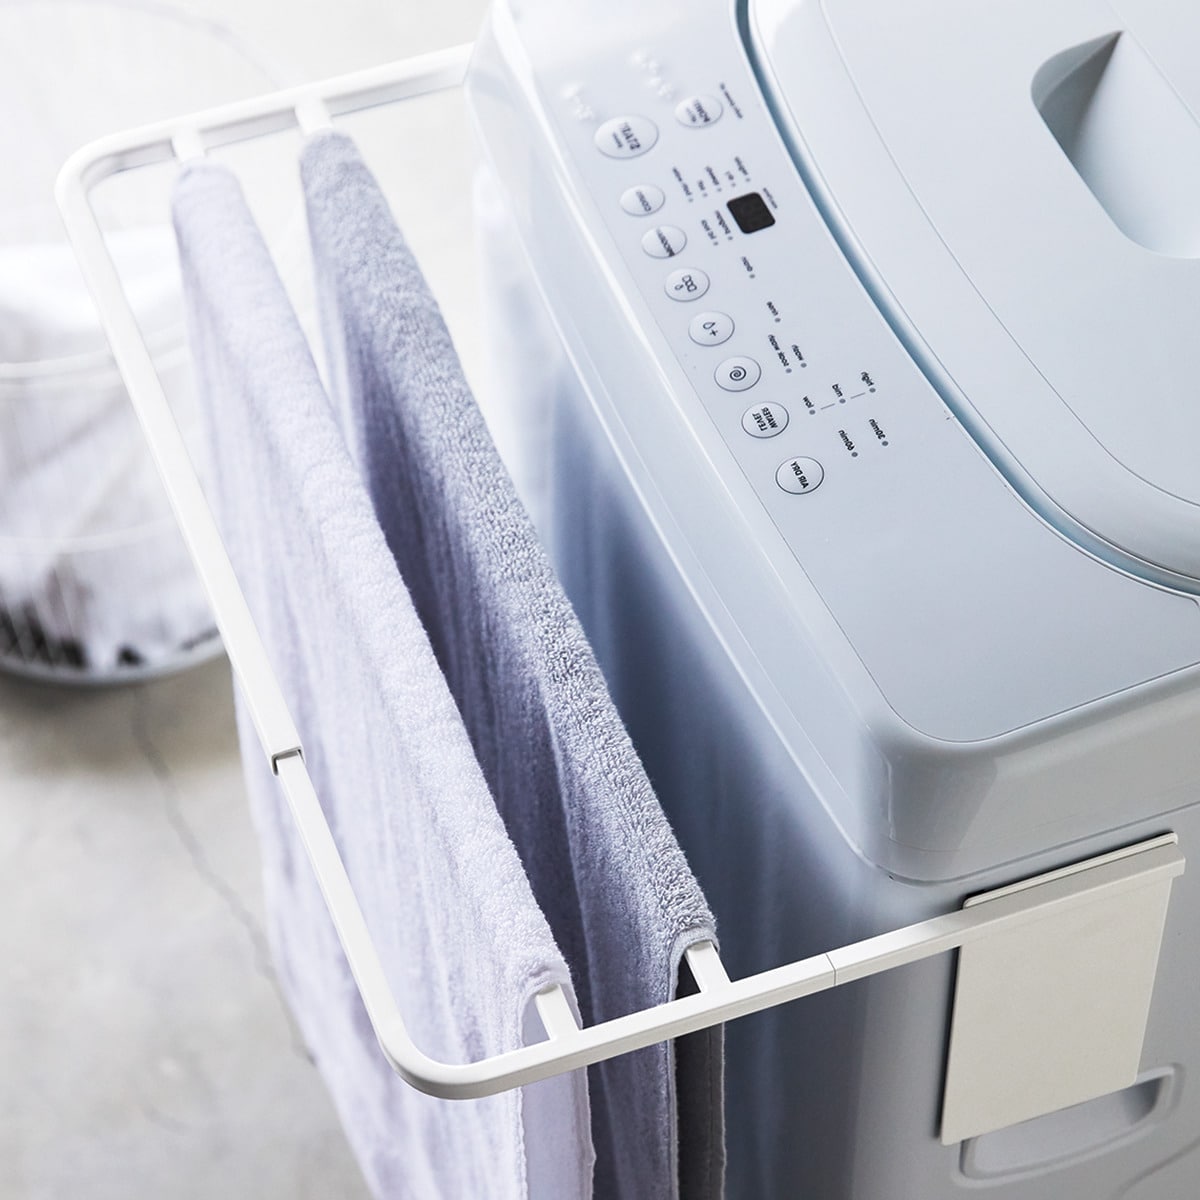 マグネット伸縮洗濯機バスタオルハンガー(9475 ホワイト)通販